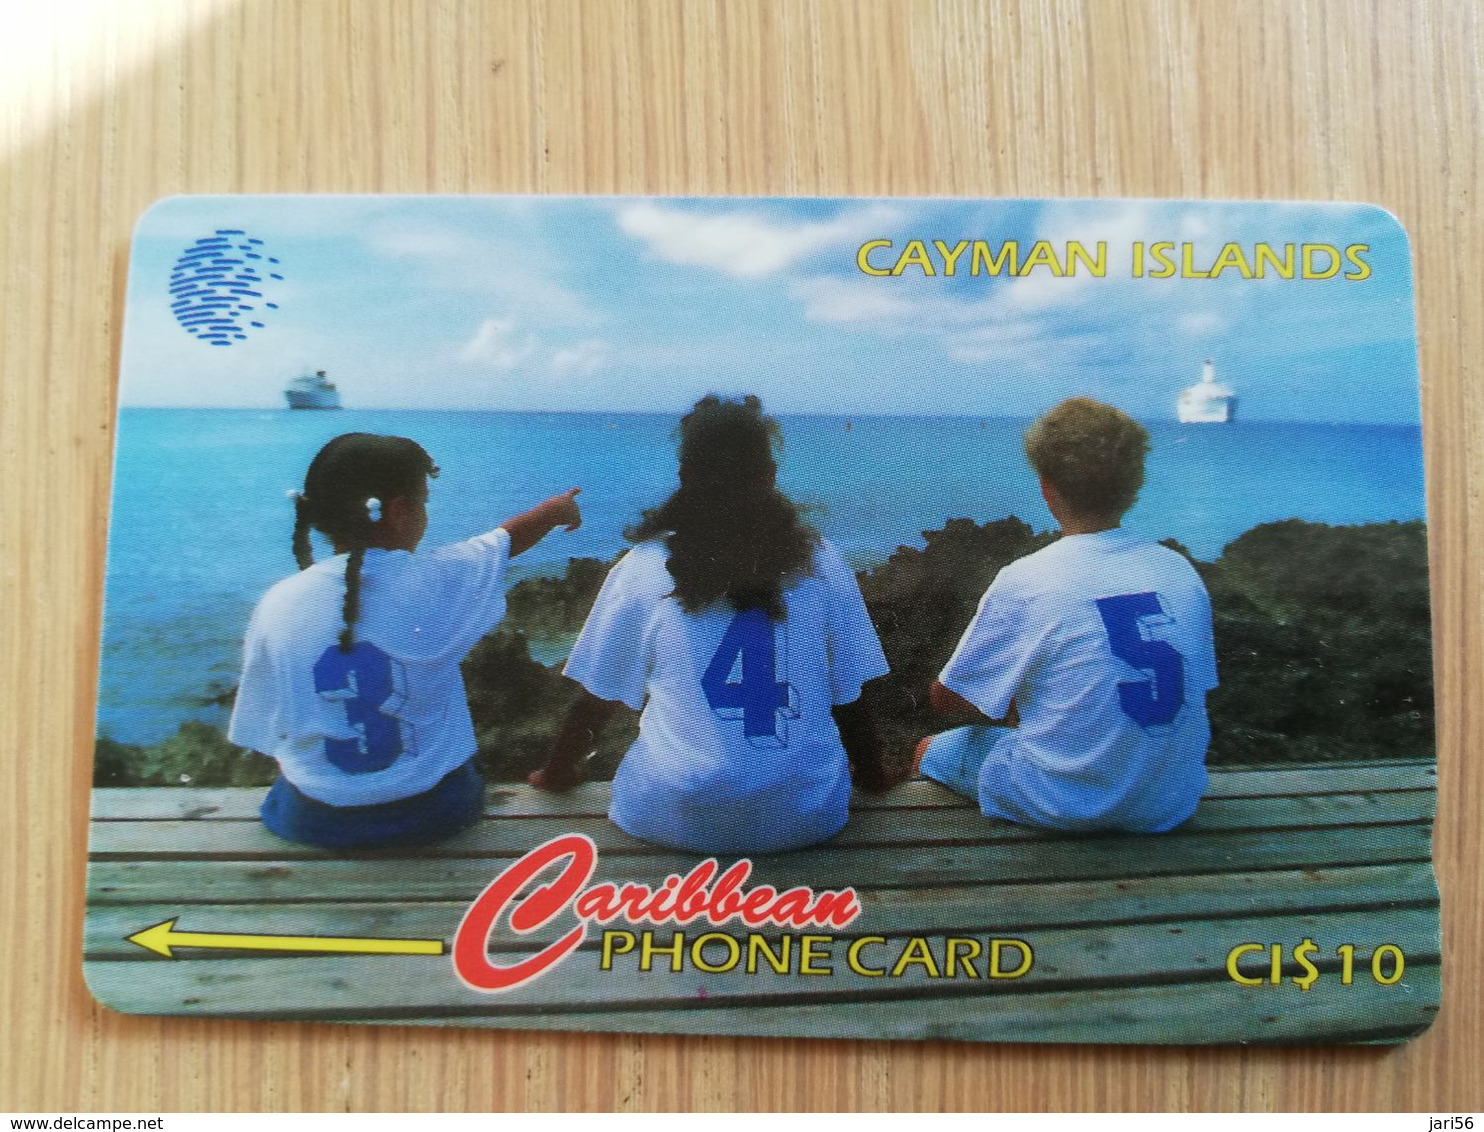 CAYMAN ISLANDS  CI $ 10,-  CAY-156B CONTROL NR 156CCIB THREE CHILDREN SITTING     Fine Used Card  ** 3113** - Cayman Islands